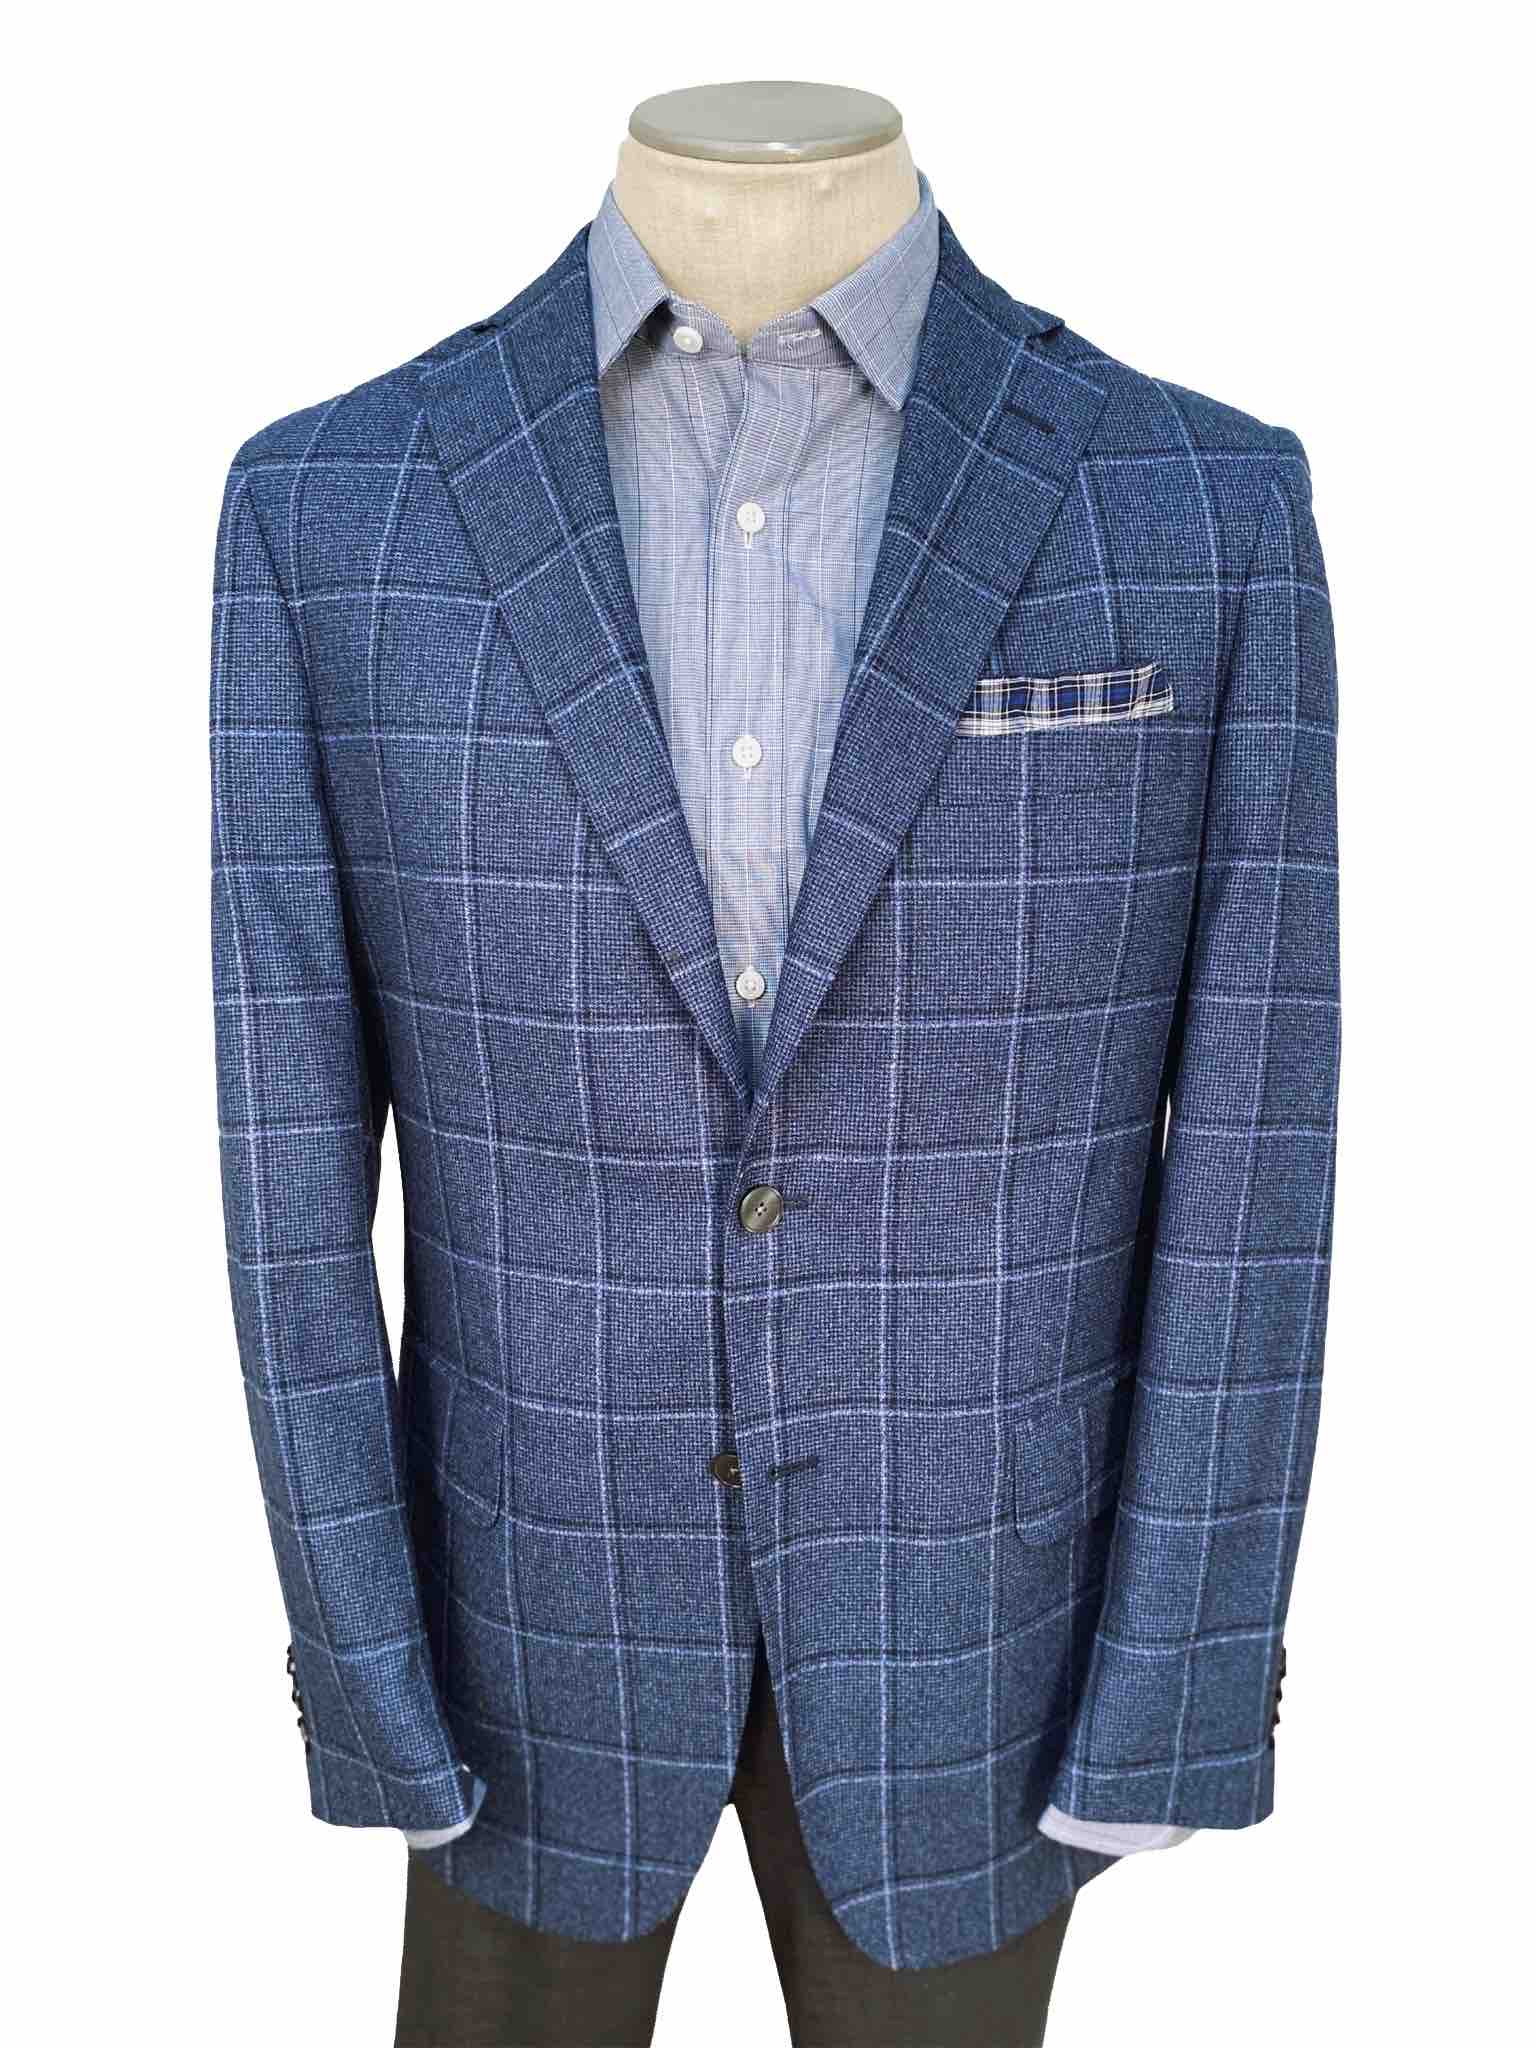 Men's Sport Coat Modern Cut - BLUE WINDOWPANE 100% WOOL